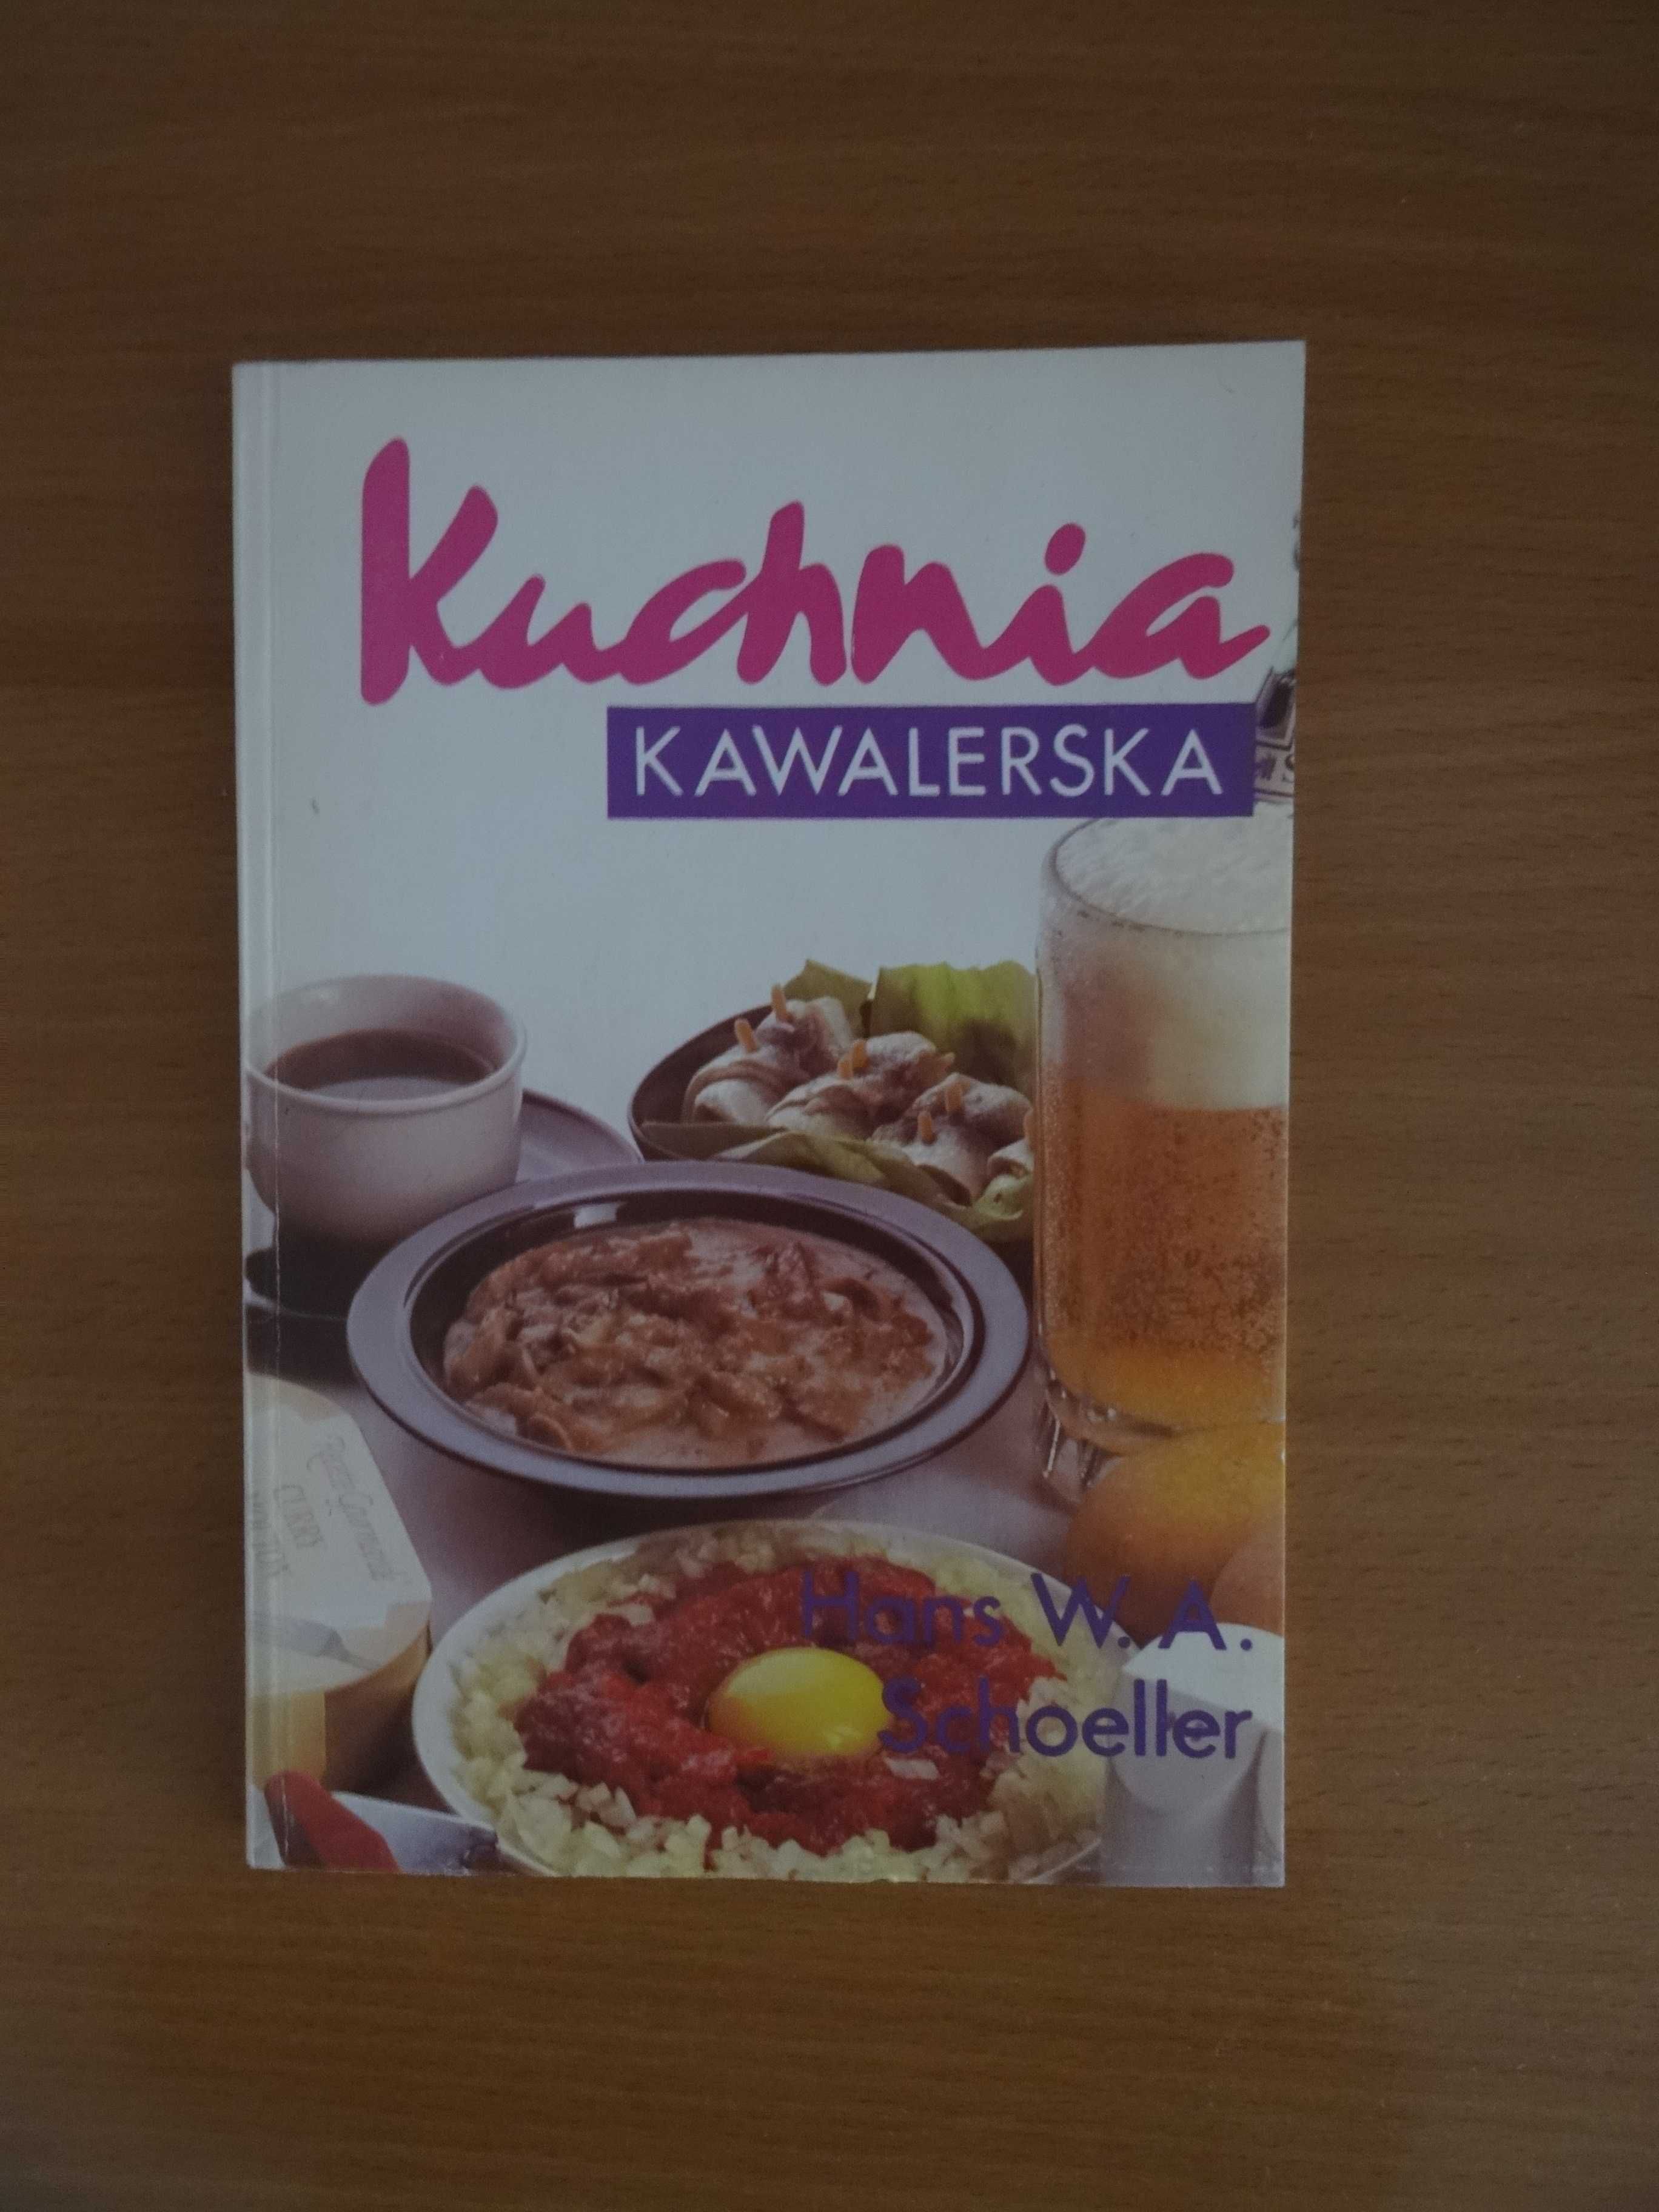 Kuchnia kawalerska, węgierska, czosnkowa - książka kucharska